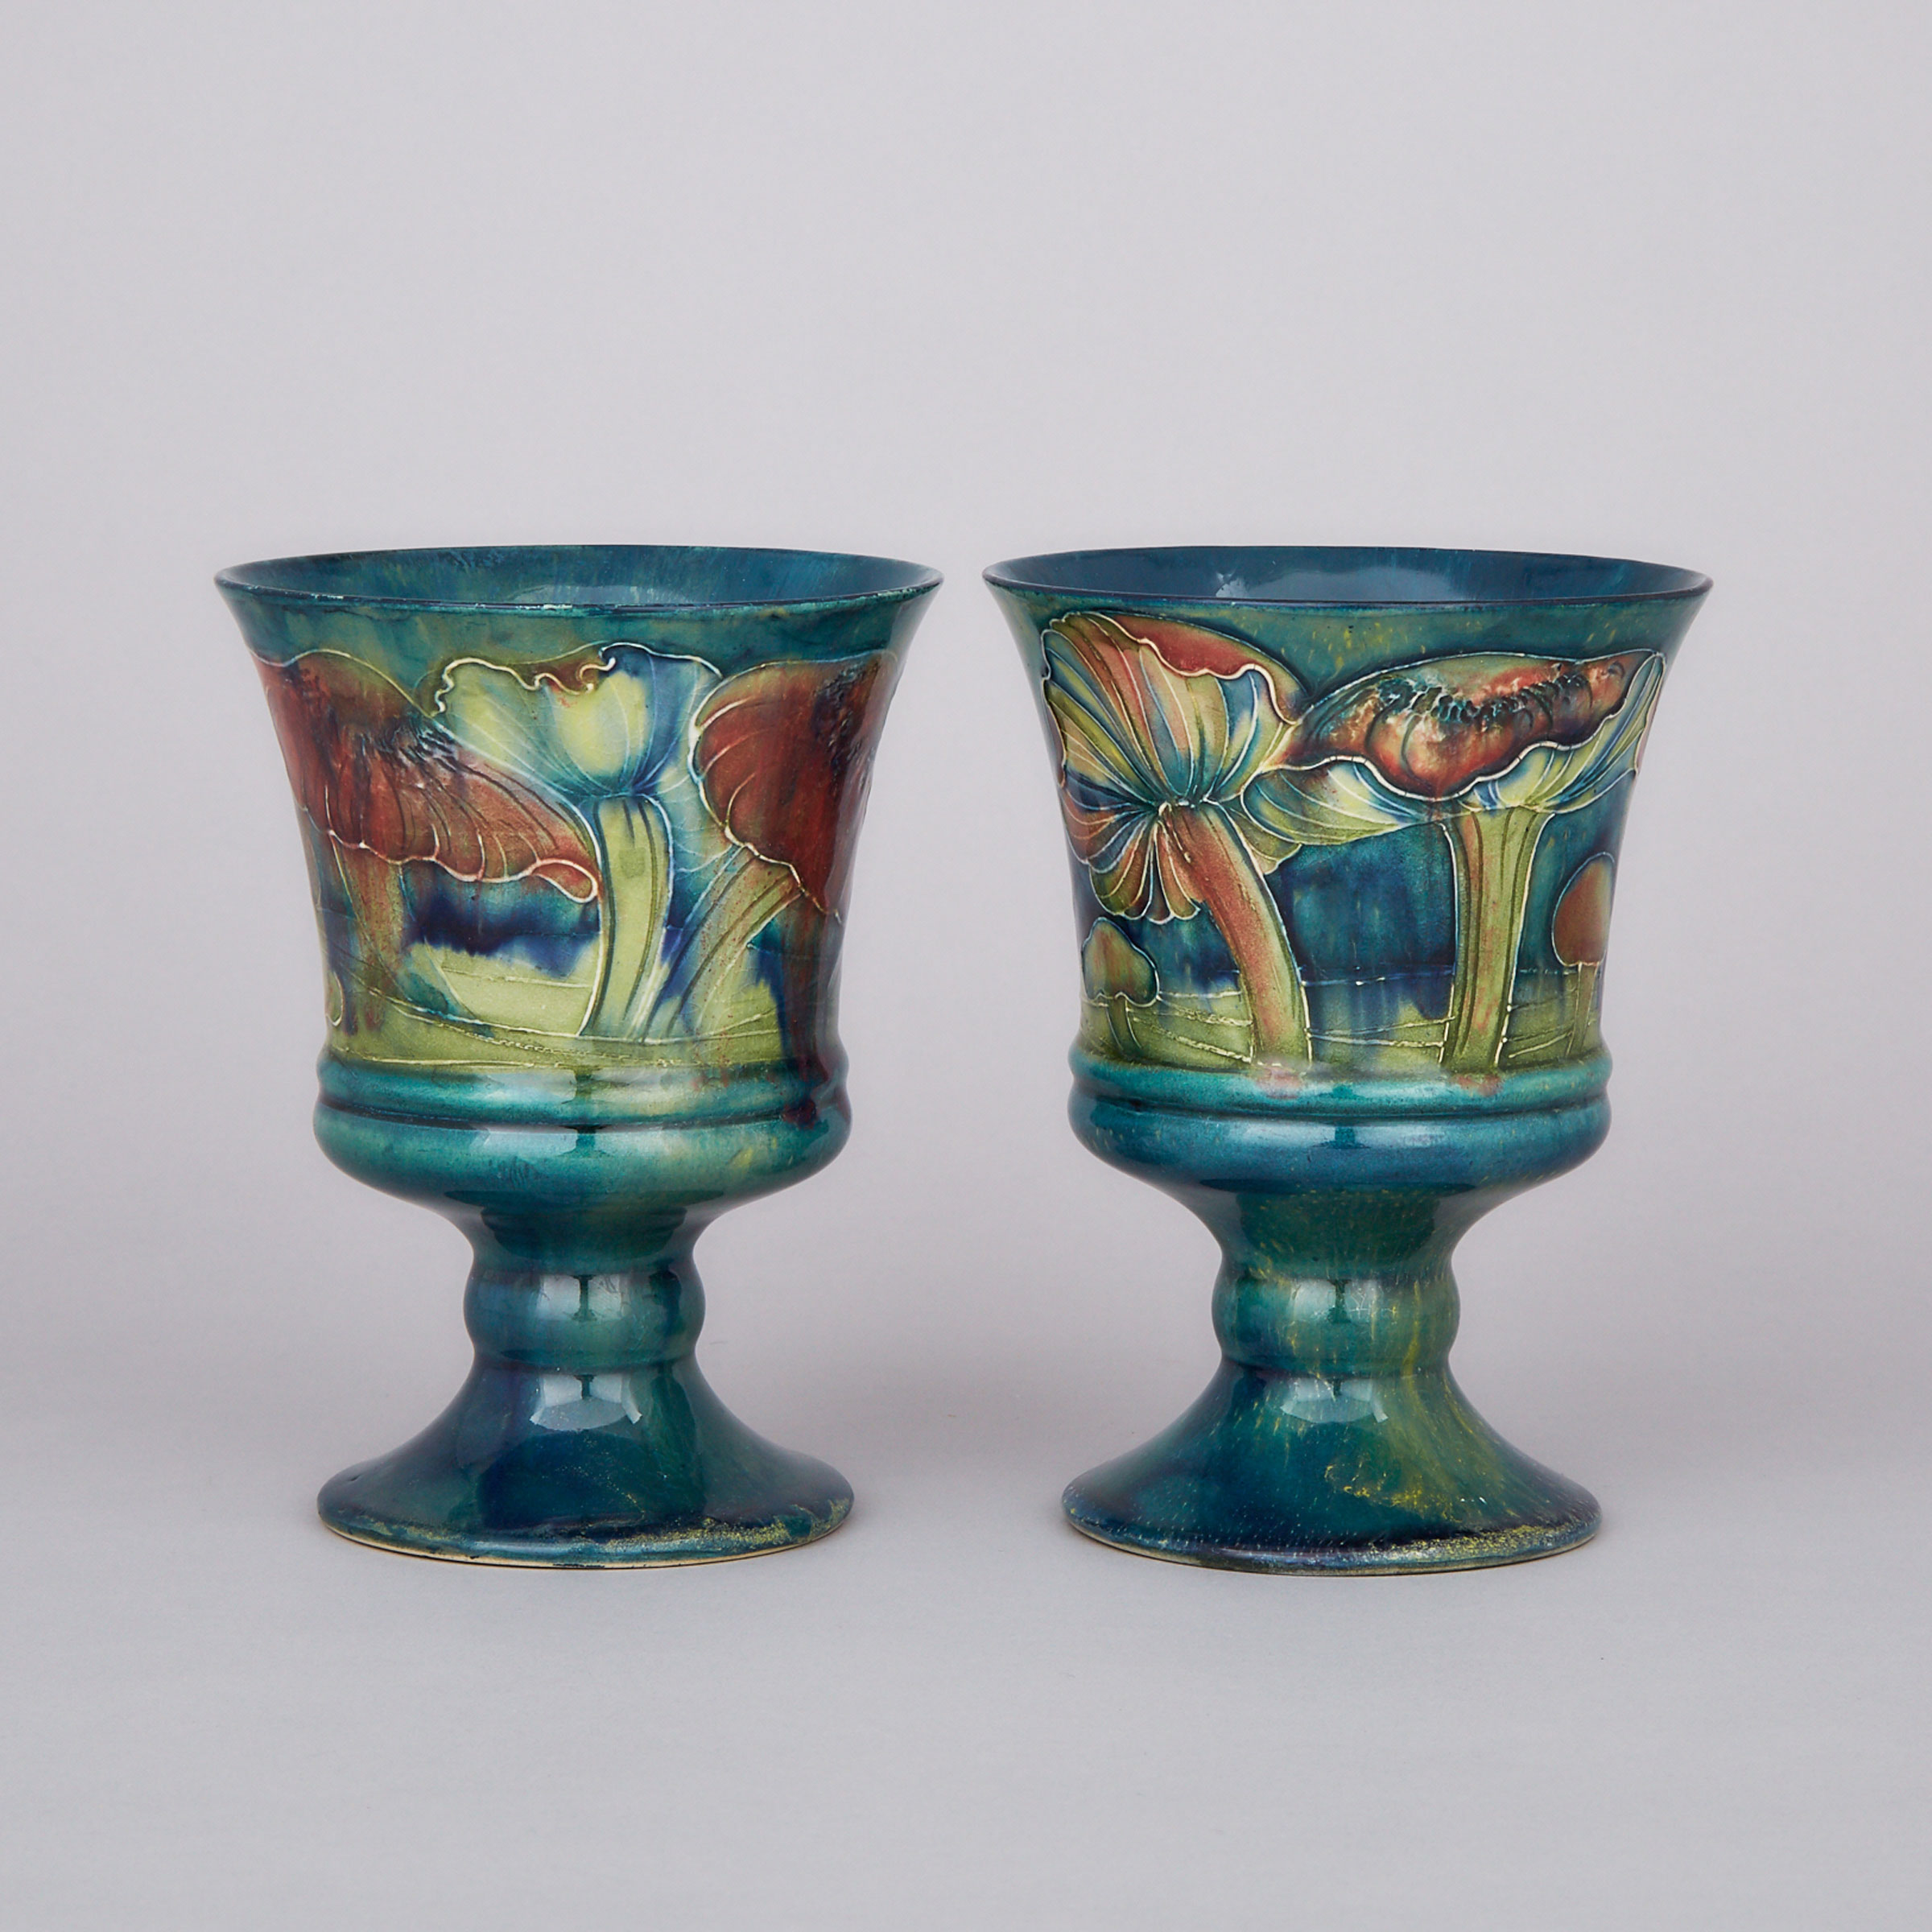 Pair of Macintyre Moorcroft Claremont Goblet Vases, c.1905-10